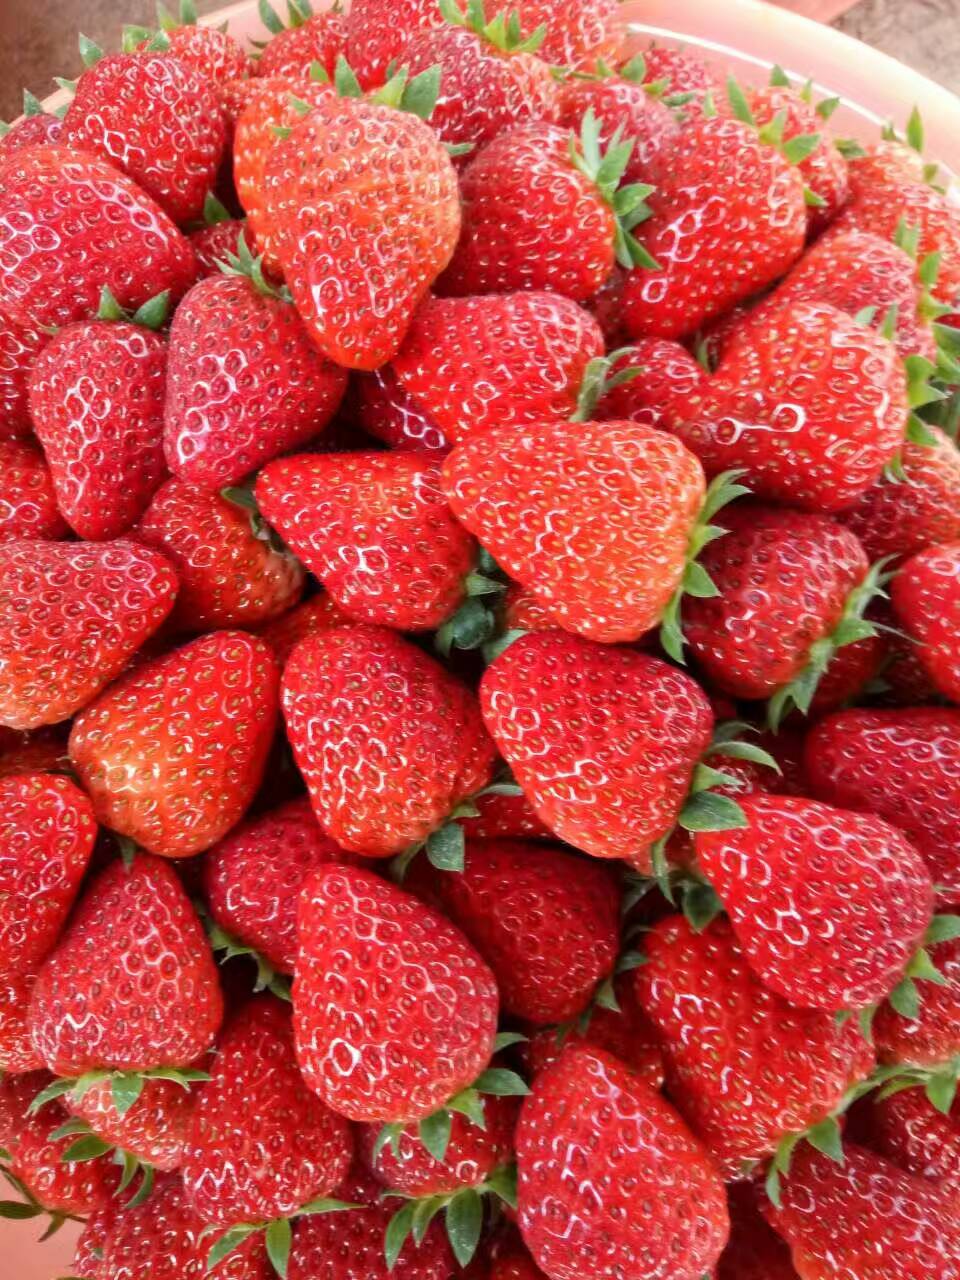 湖北甜宝草莓苗新品种产地在哪